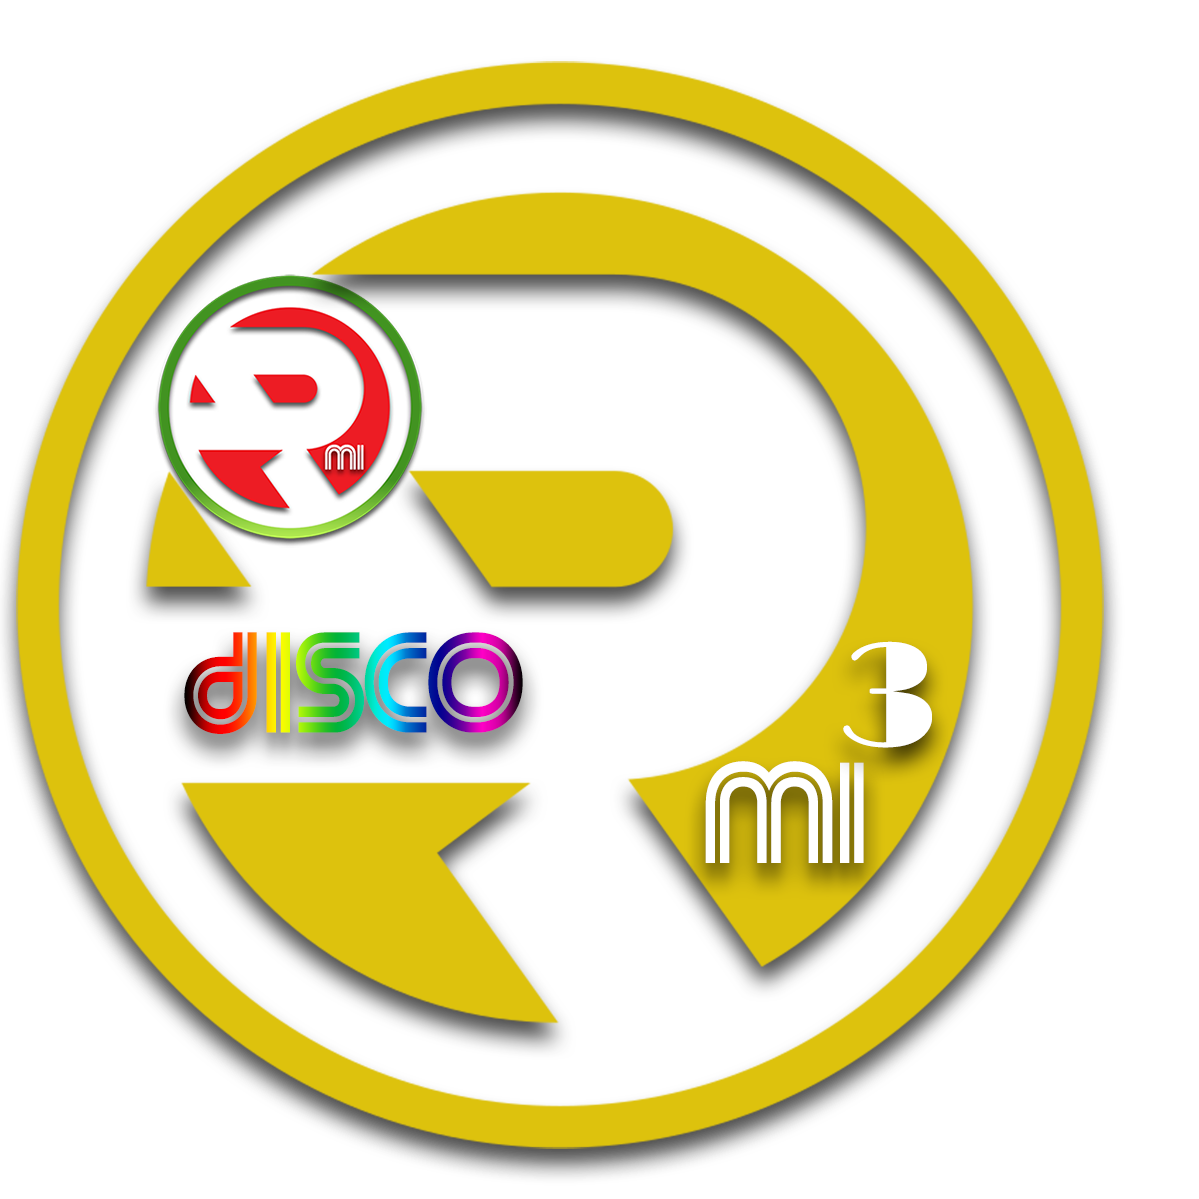 RMI - Euro Disco